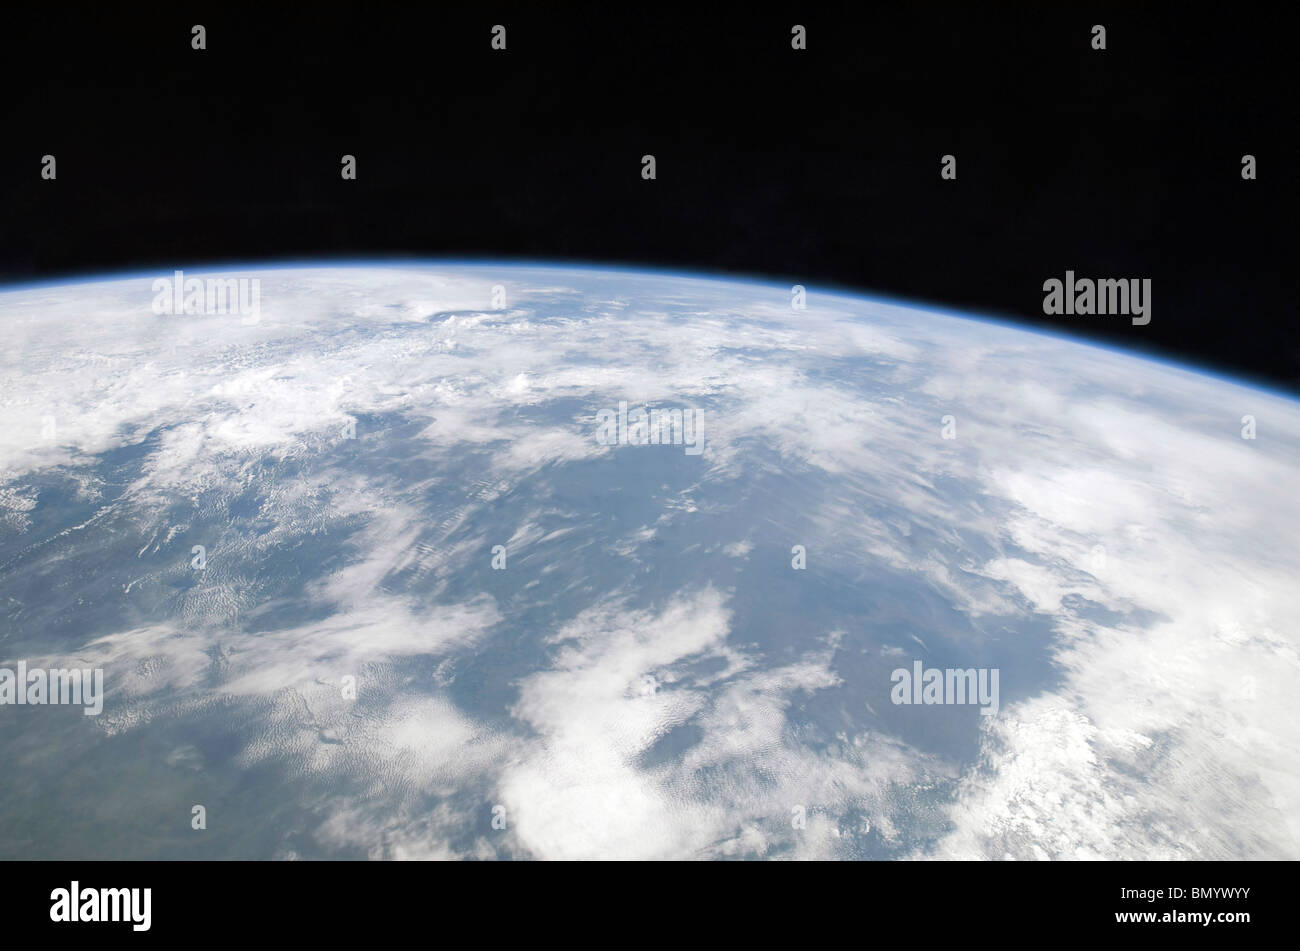 Febbraio 20, 2010 - Vista del pianeta Terra dallo spazio. Foto Stock